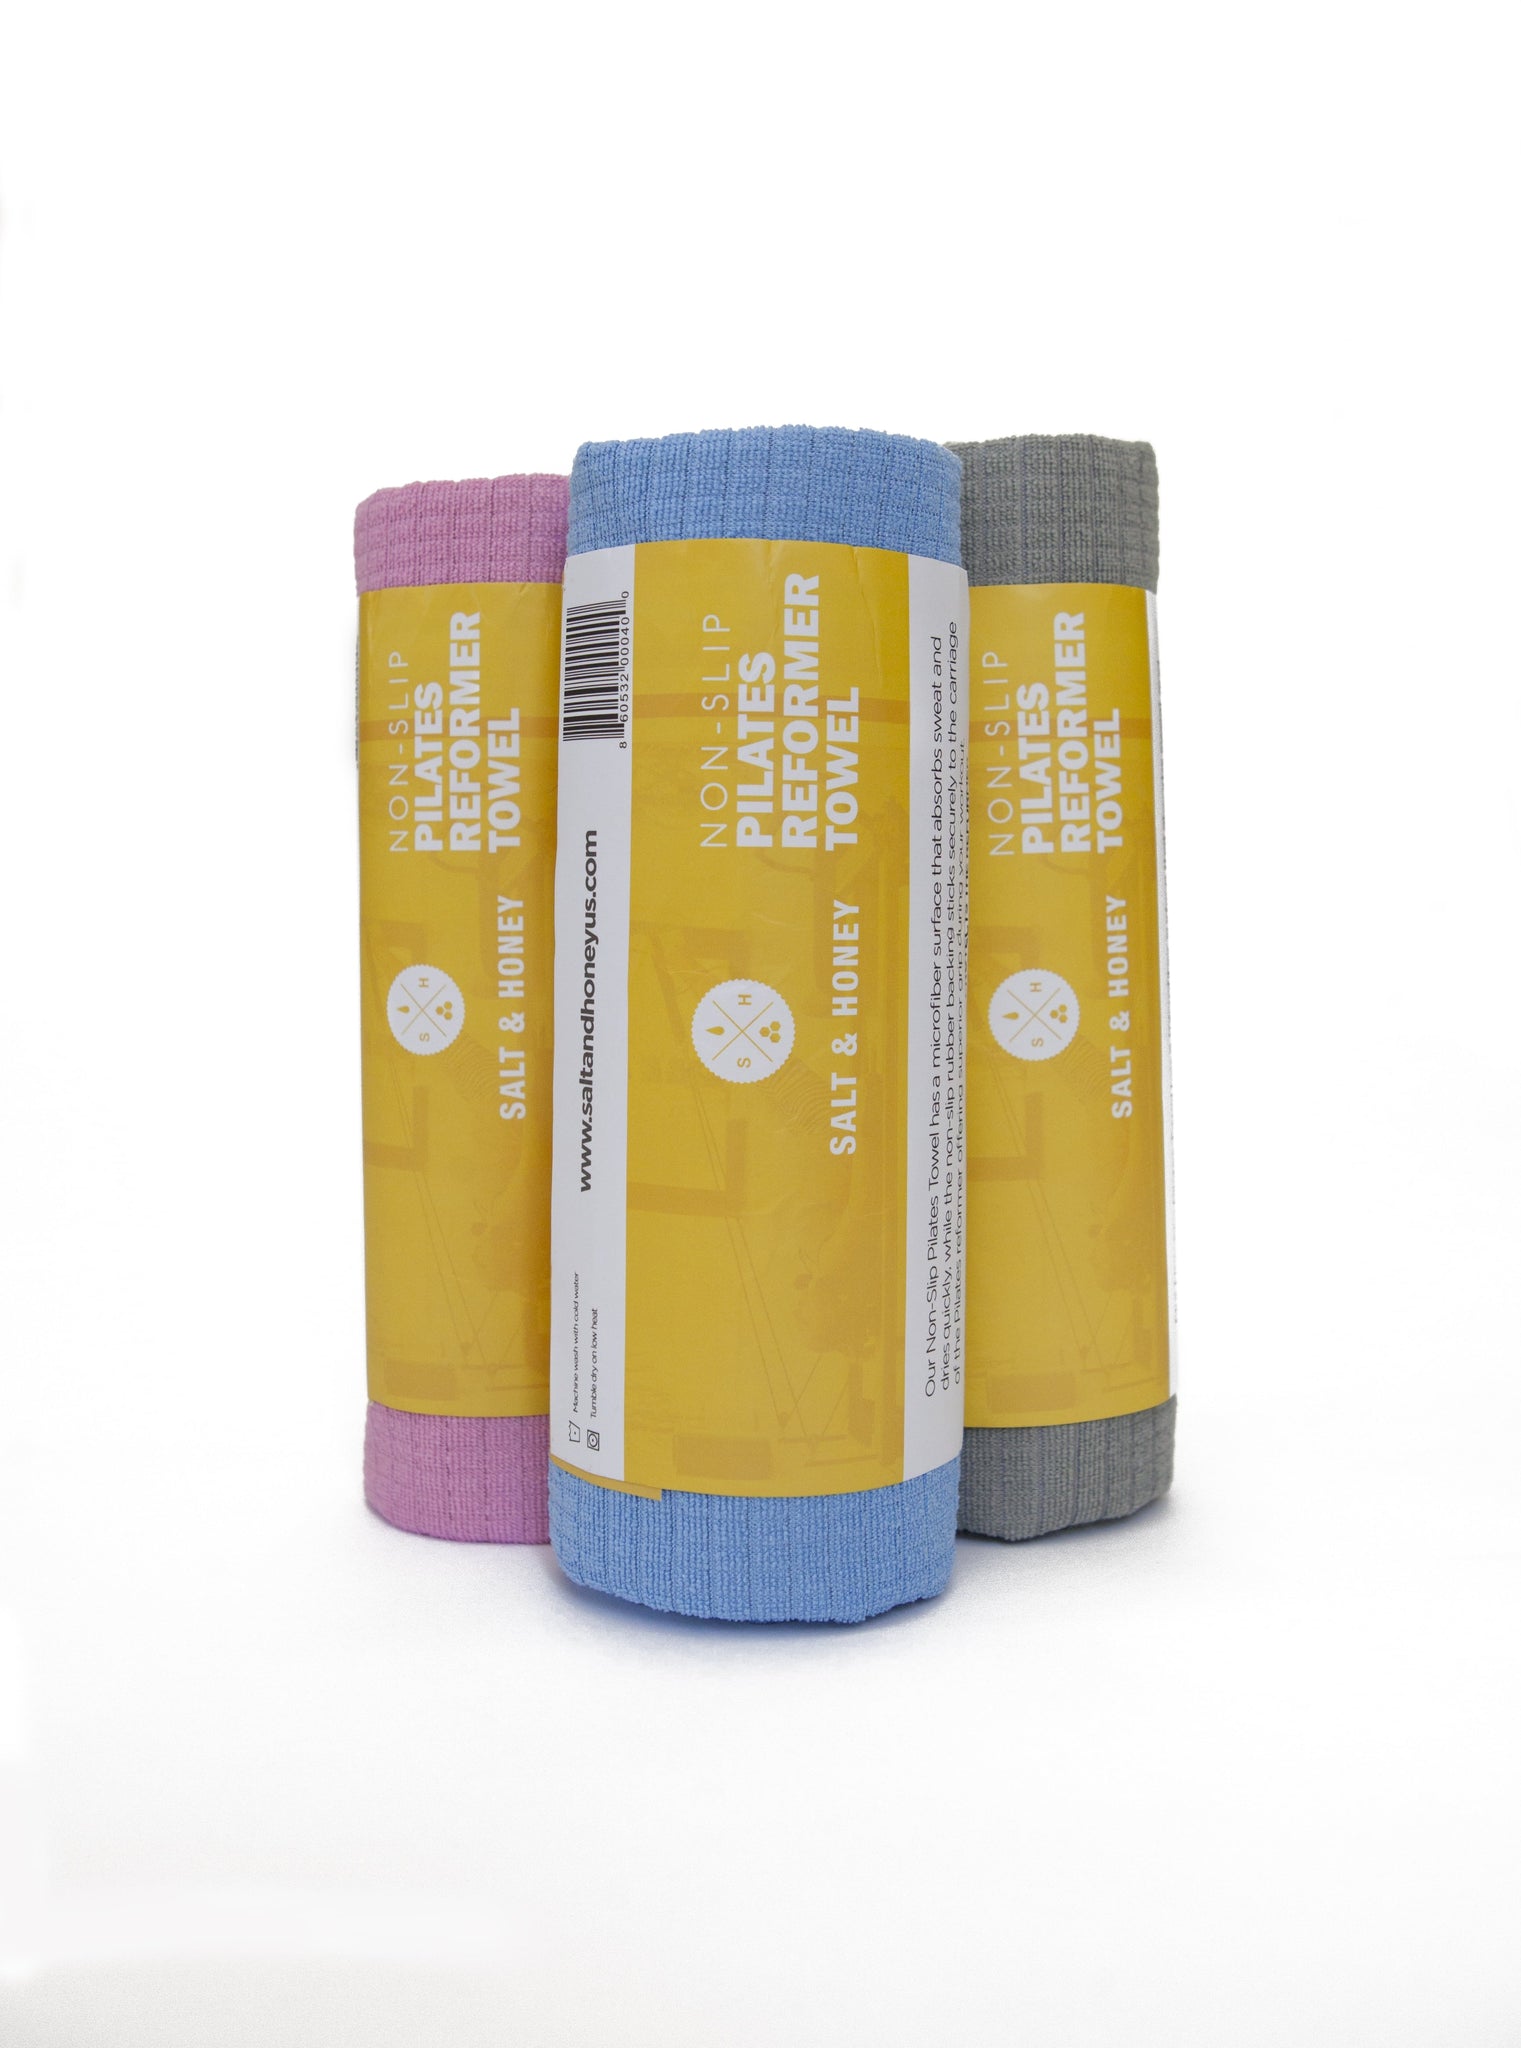 Salt & Honey Non-Slip Pilates Reformer Mat Towel Large, Blue